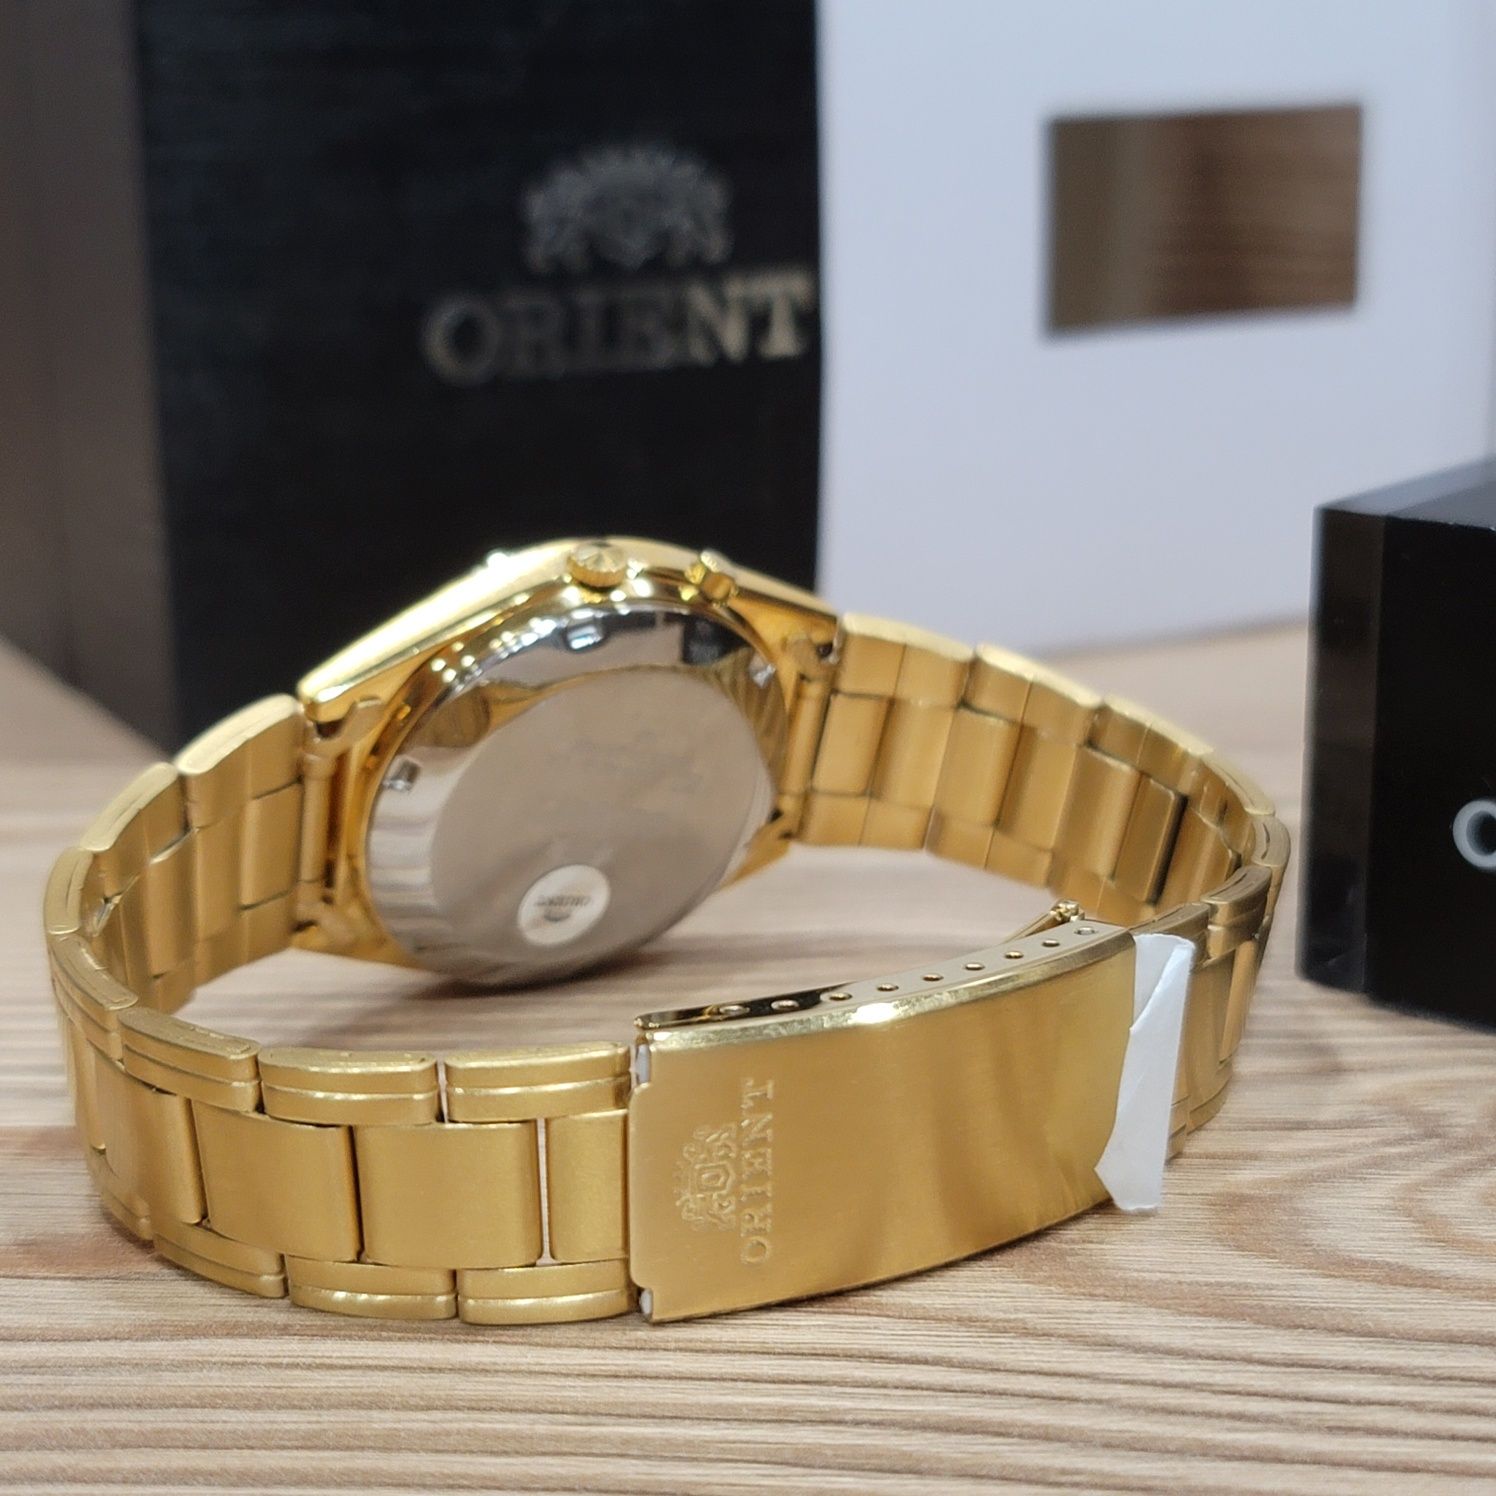 часы Orient Automatic 100% оригинал новый